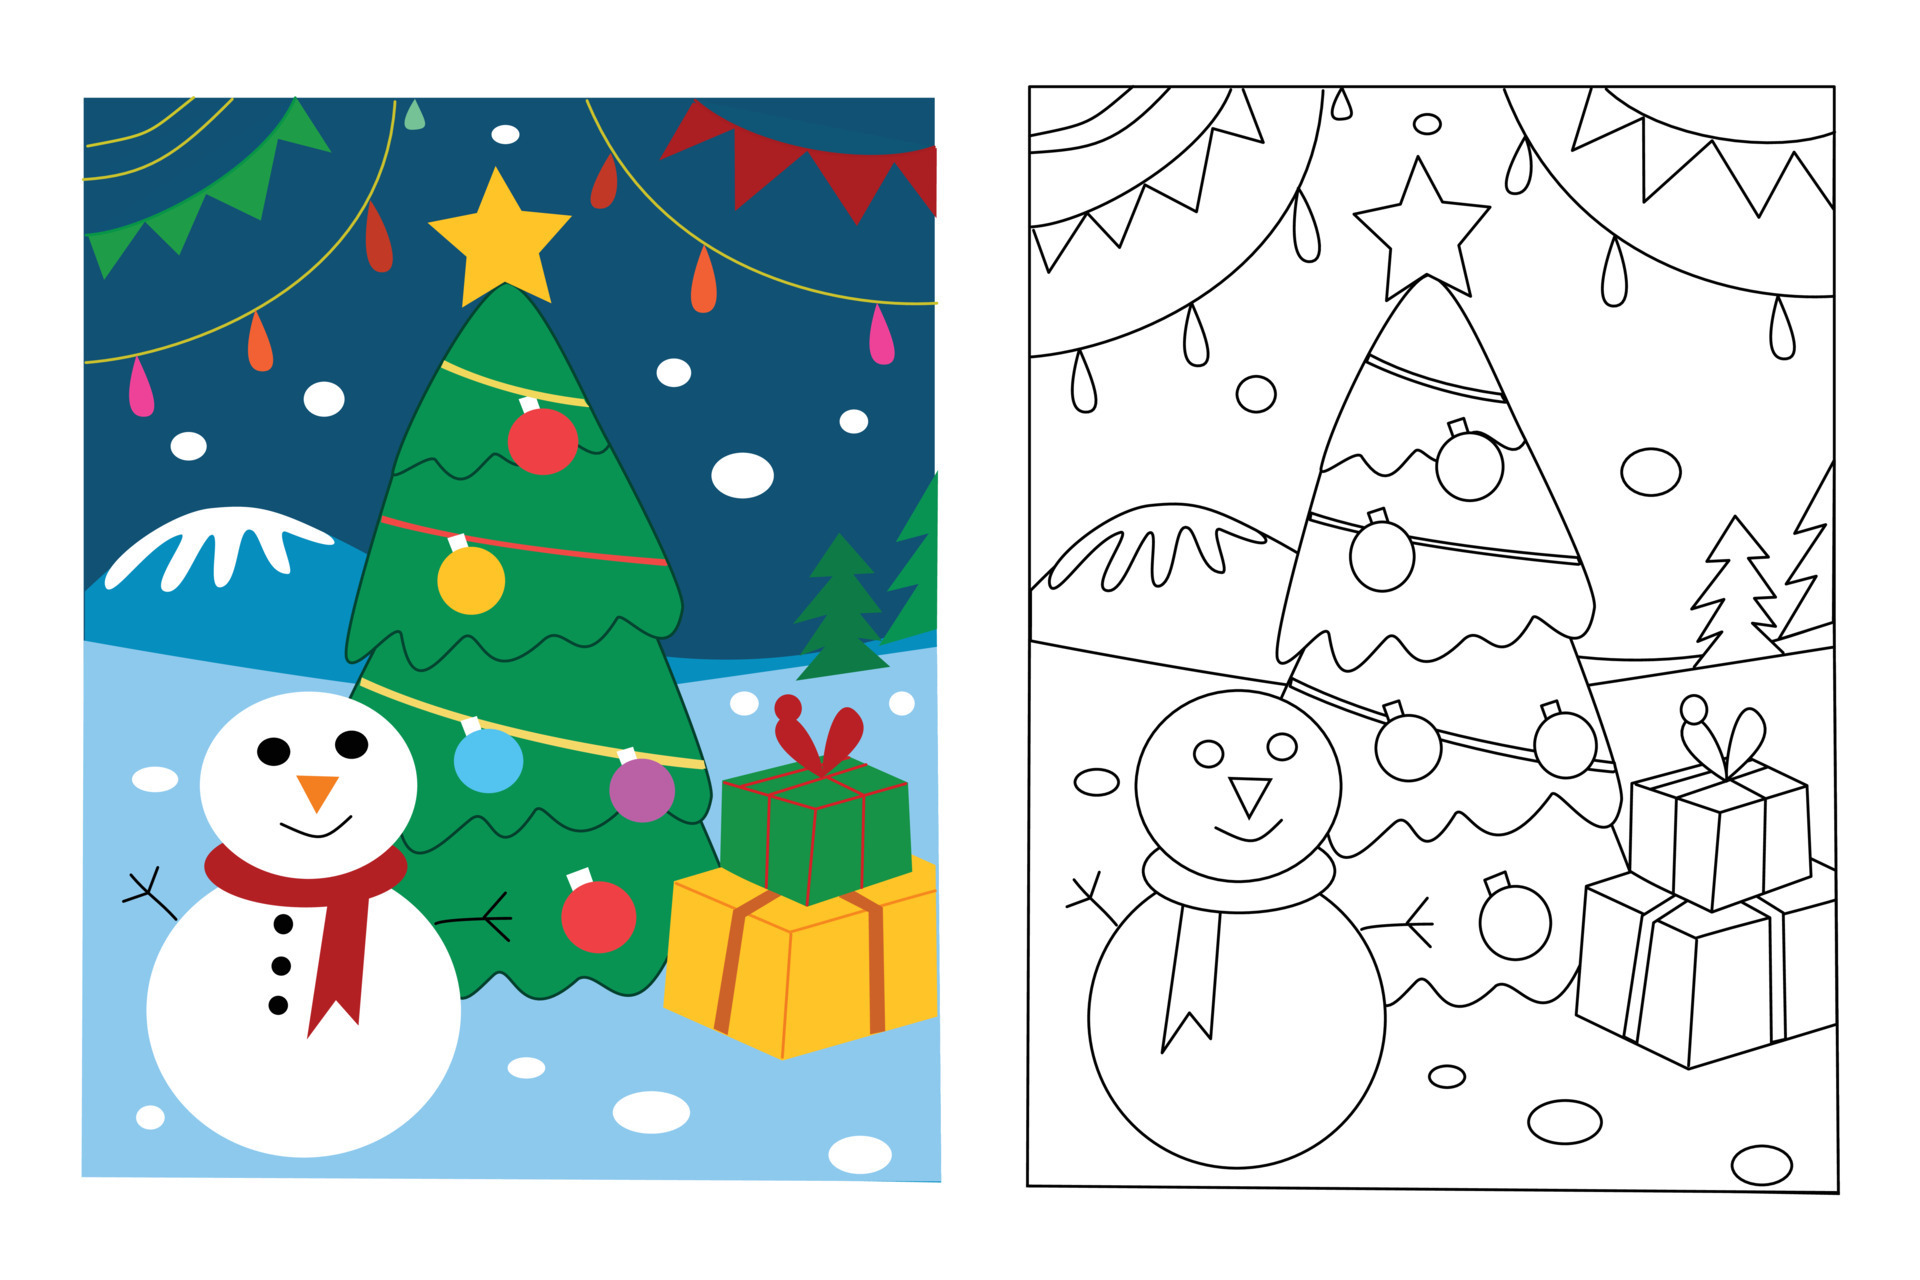 como desenhar e pintar desenhos animados de árvore de natal. desenho fácil  para aprender, brincar, educação, arte, crianças 14460443 Vetor no Vecteezy